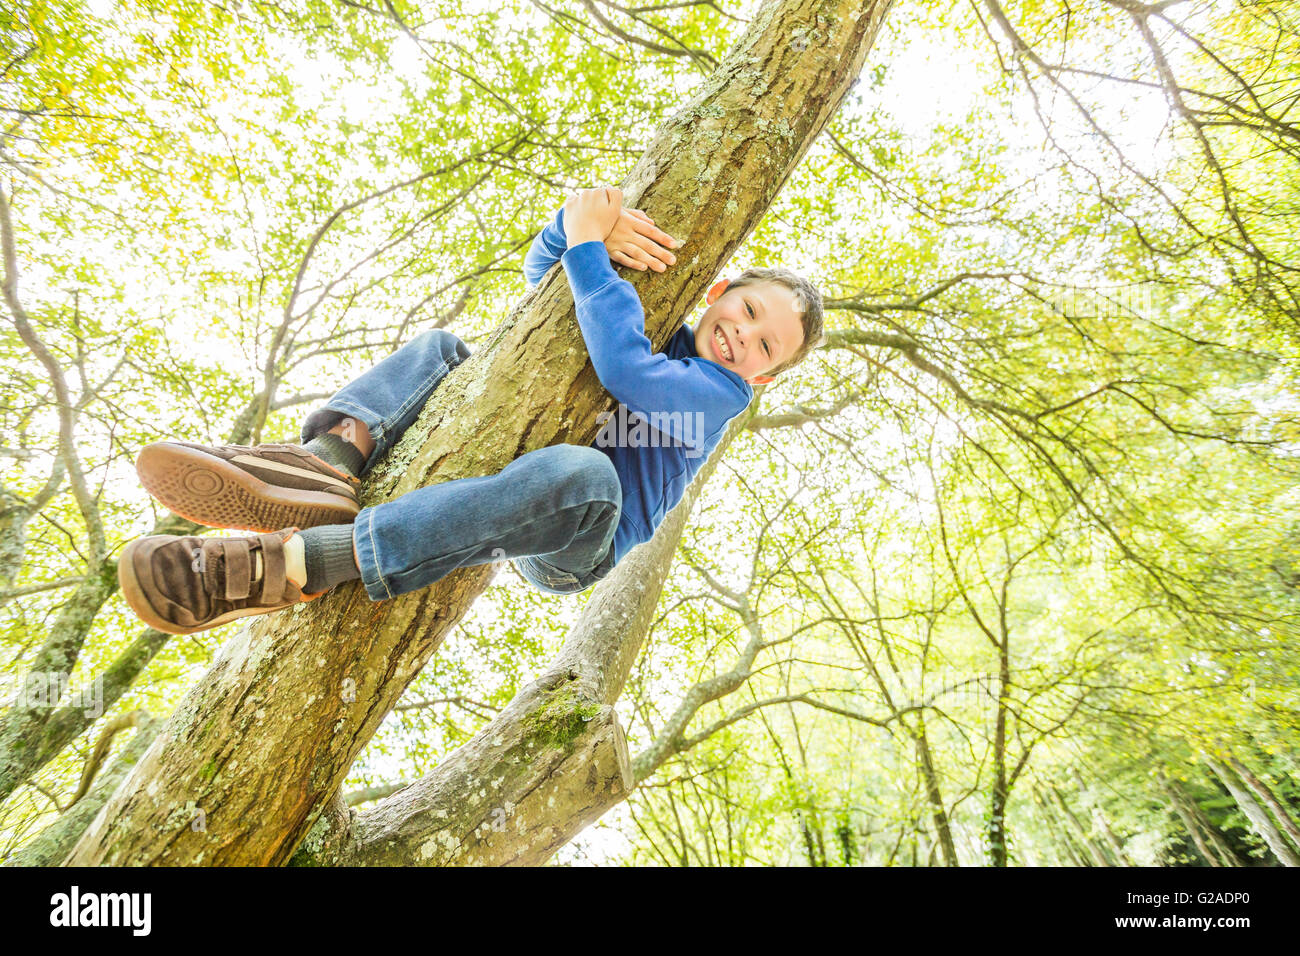 Sonriendo boy (6-7) árbol de escalada Foto de stock